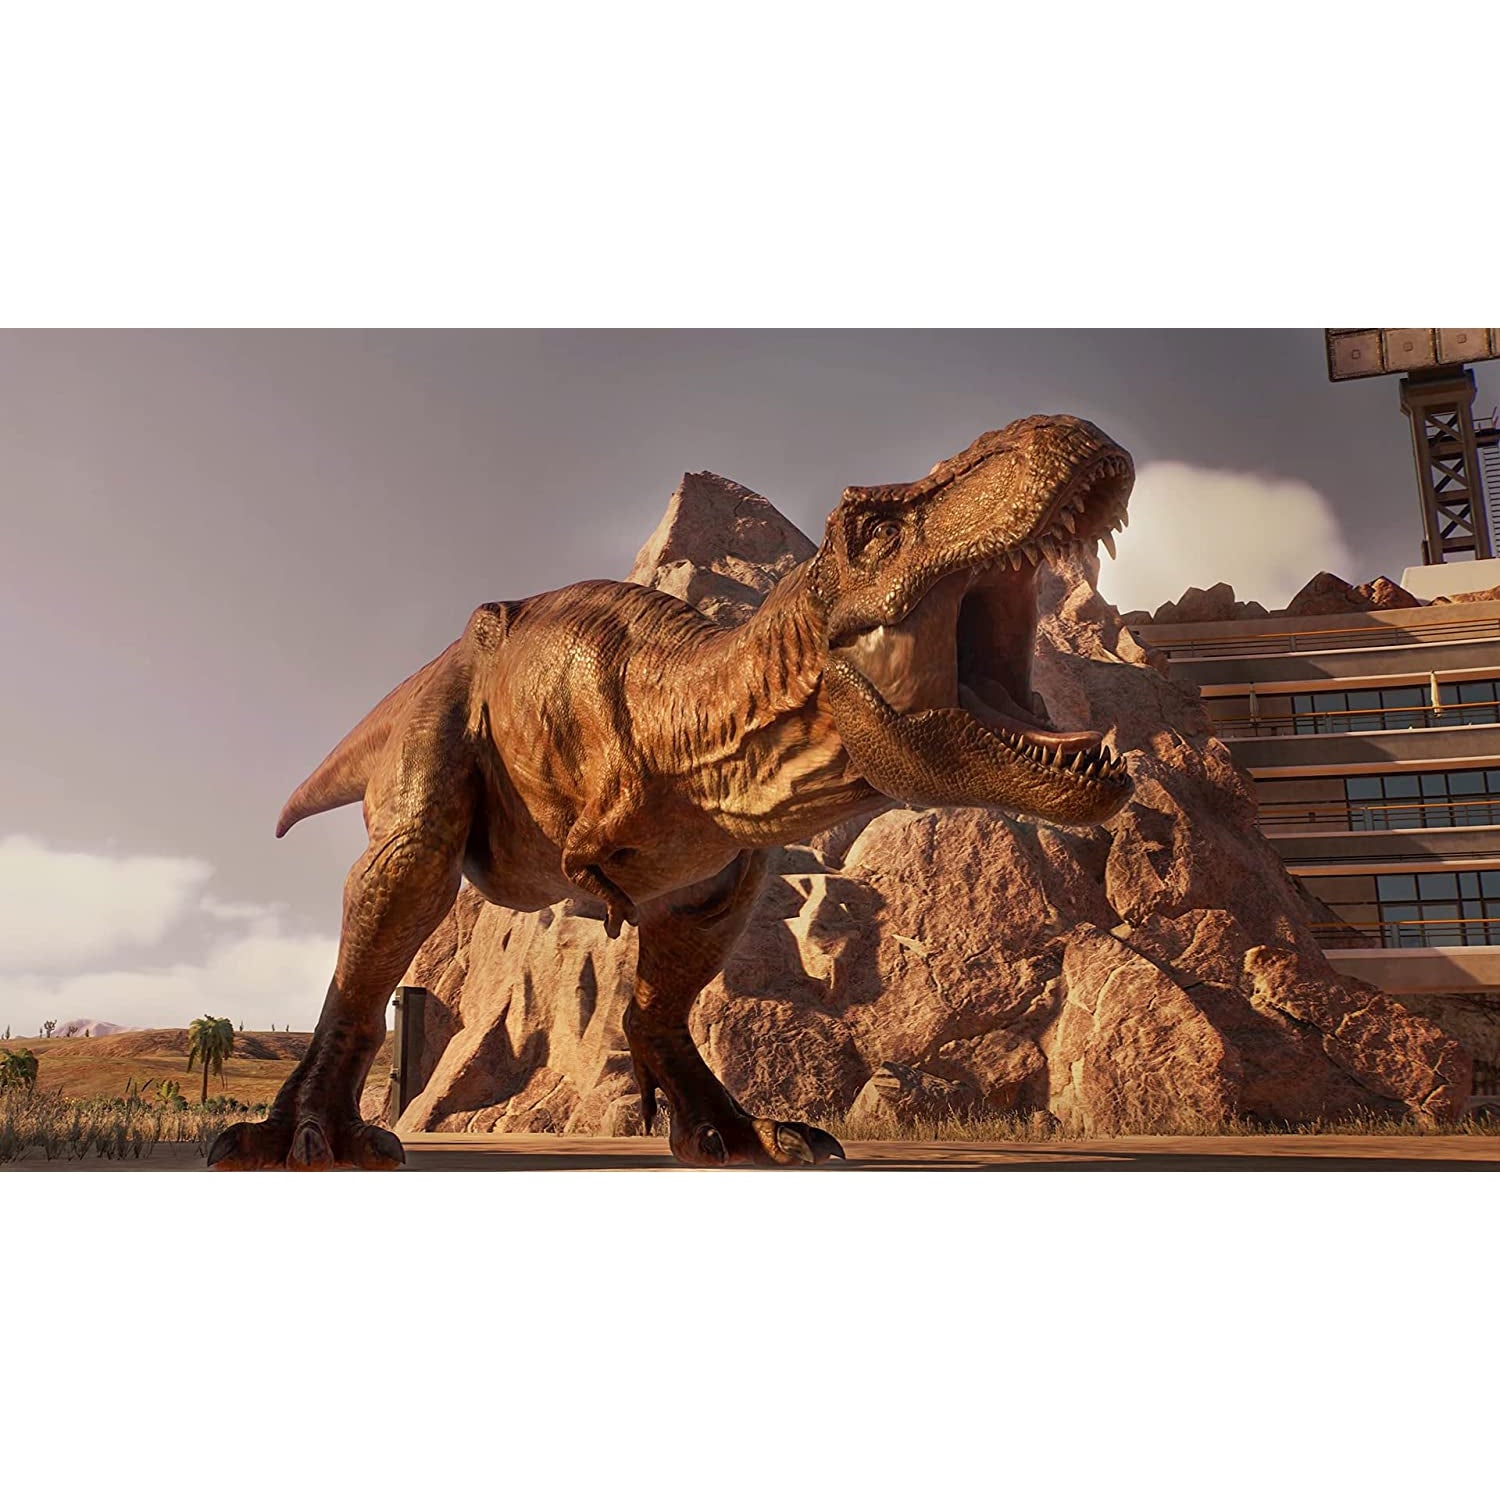 Jurassic World Evolution 2 (Xbox)